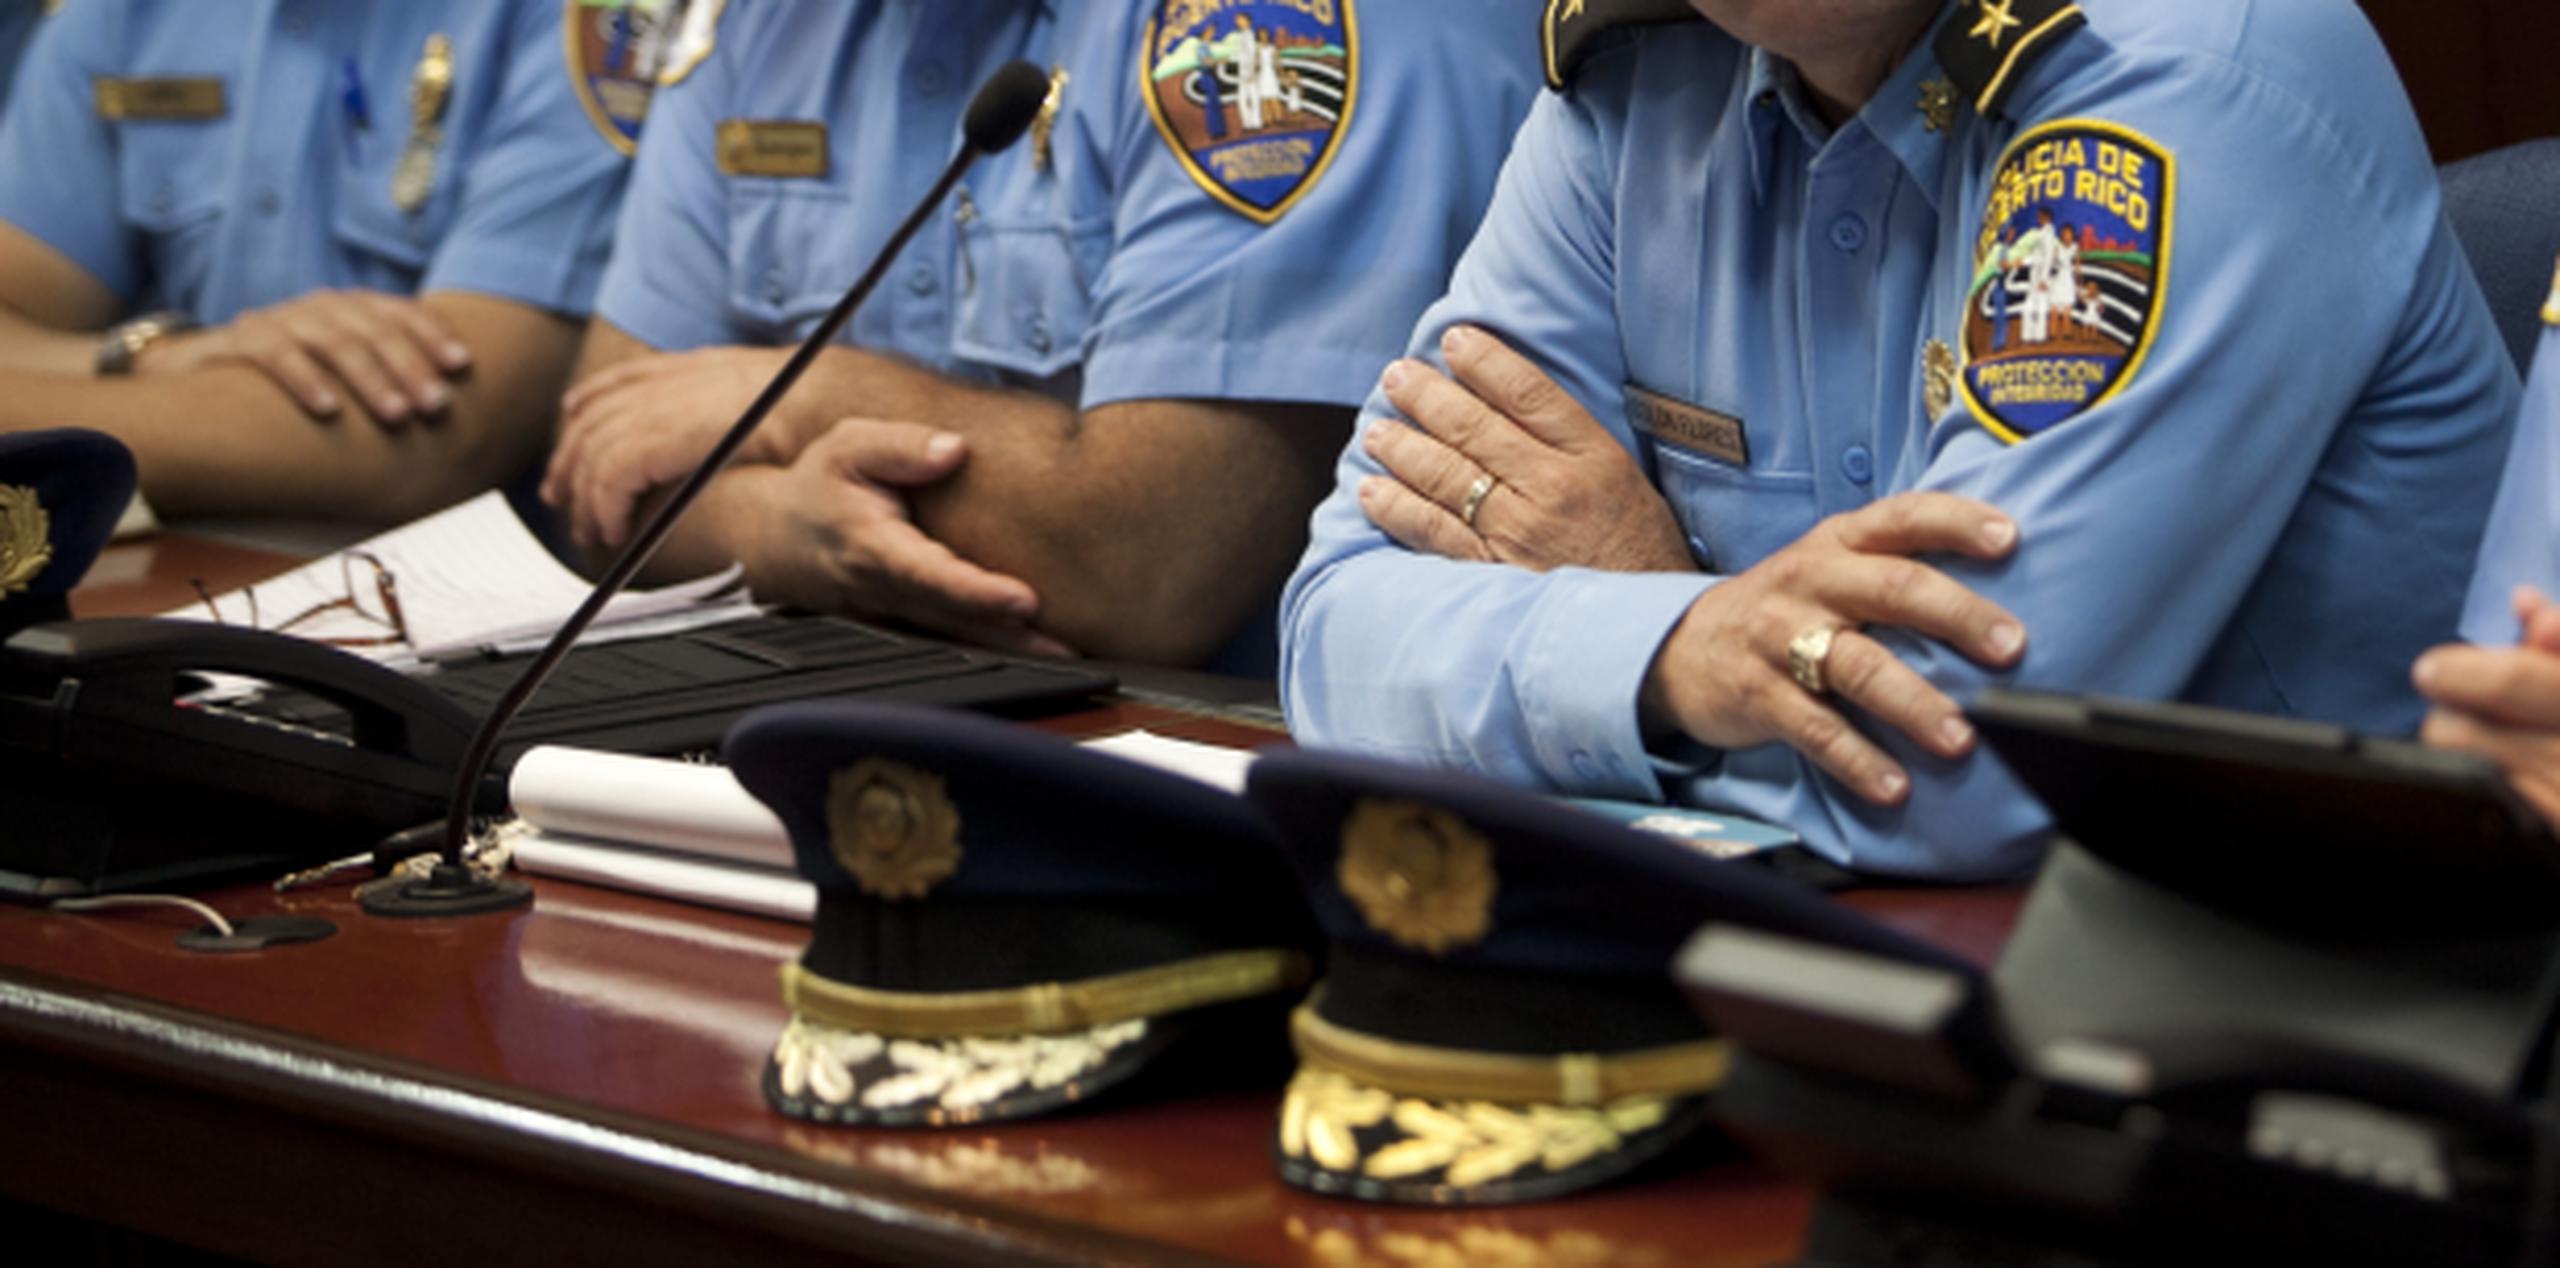 "Estos oficiales fueron engañados", dijo el presidente de FUPO, Diego Figueroa. (Archivo)